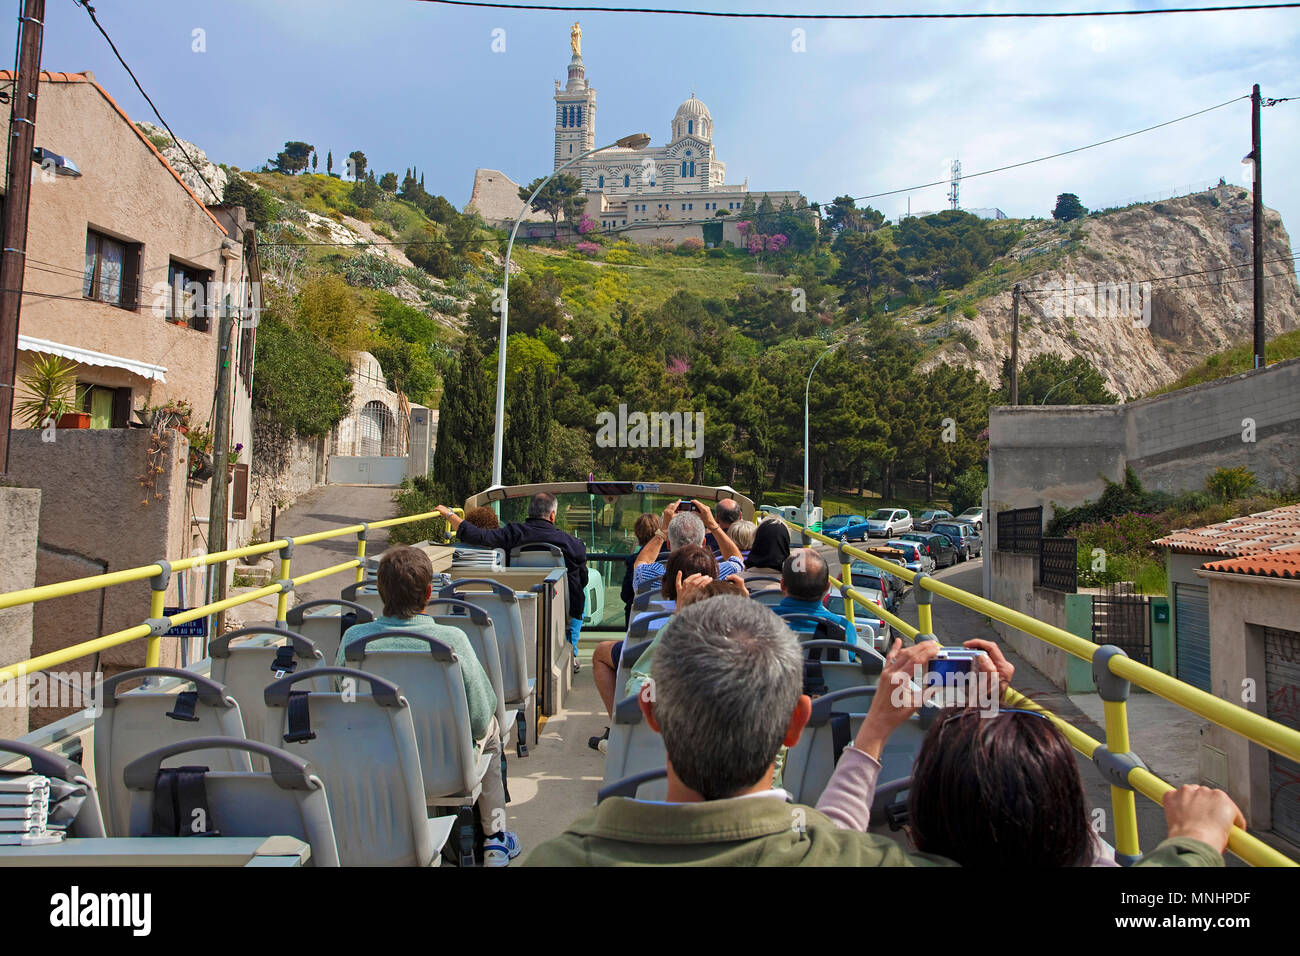 City Tour, touristische Bus auf dem Weg zur Kathedrale Notre-Dame de la Garde, Marseille, Bouches-du-Rhône, Südfrankreich, Frankreich, Europa Stockfoto